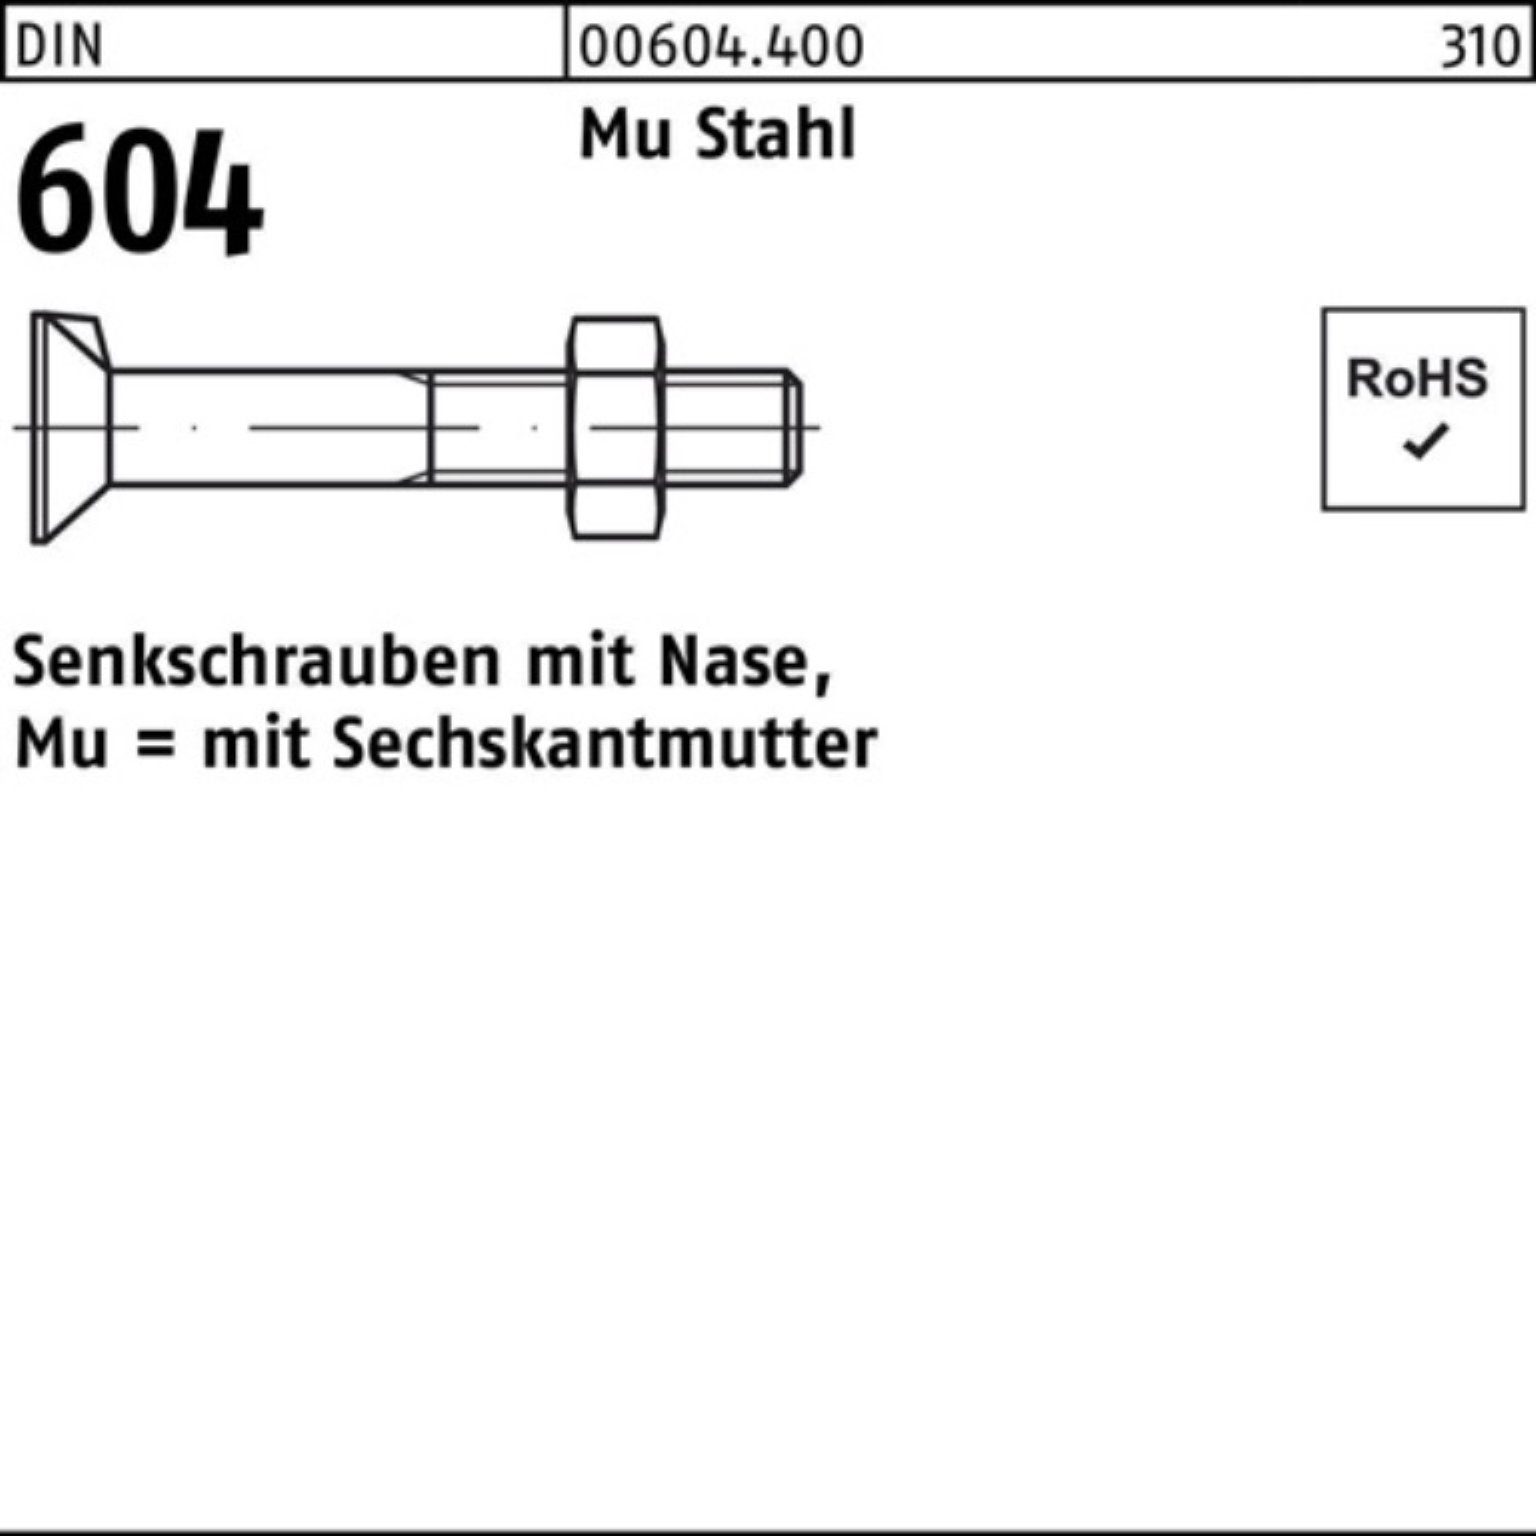 Reyher Senkschraube 100er Pack Senkschraube Mu 4.6 Nase/6-ktmutter 140 M16x DIN Stahl 604